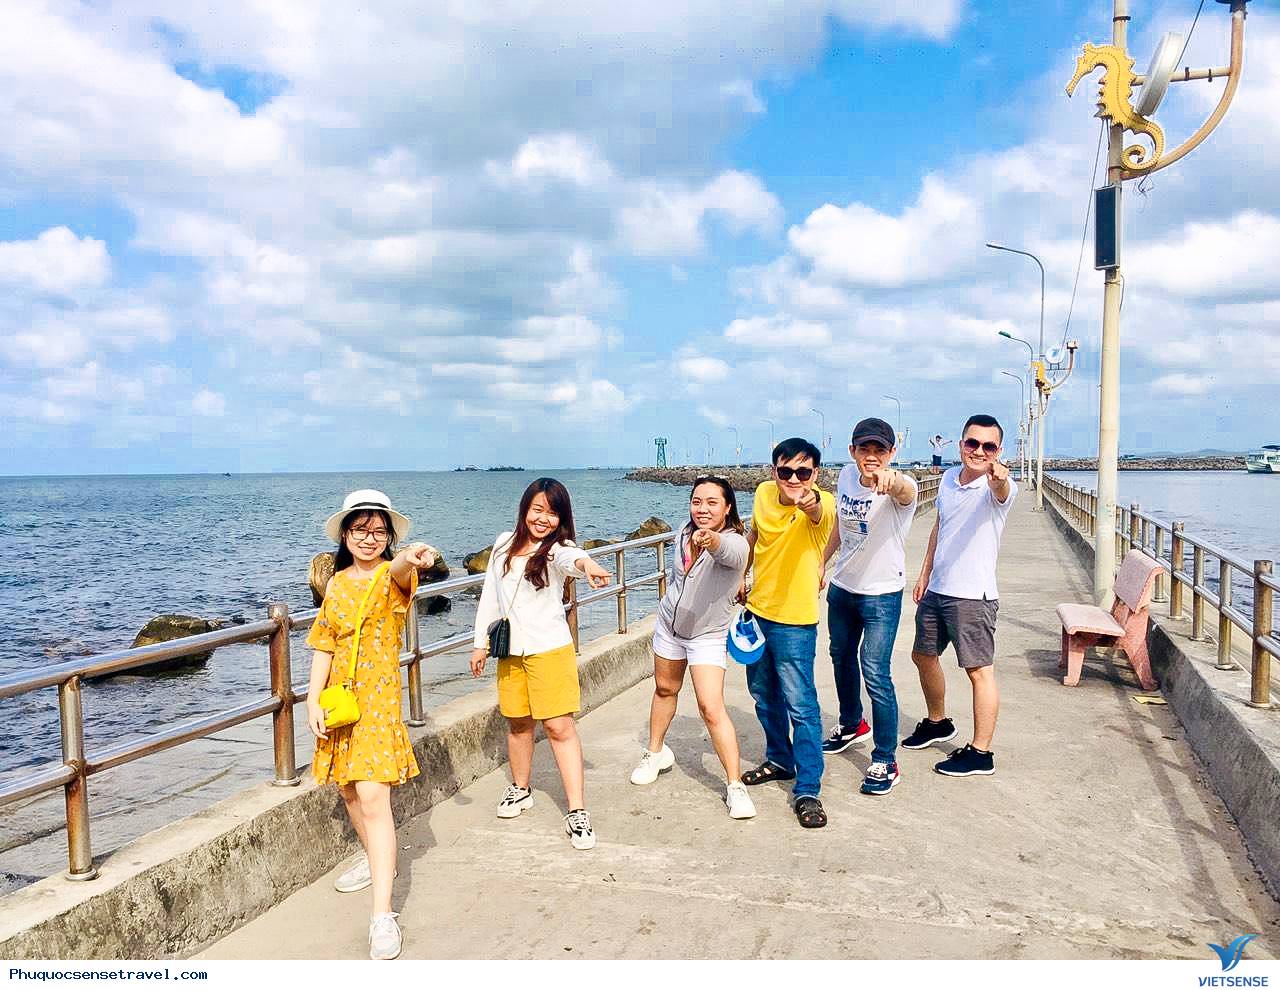 Tour Du Lịch Phú Quốc: Phú Quốc là một trong những điểm đến du lịch hot nhất hiện nay. Với những bãi biển tuyệt đẹp và những địa danh nổi tiếng, mỗi chuyến đi đến đây đều trở thành một kỷ niệm khó quên trong lòng người tham quan. Đừng bỏ qua cơ hội khám phá thiên đường đảo ngọc này với chương trình tour du lịch đa dạng và hấp dẫn của chúng tôi.